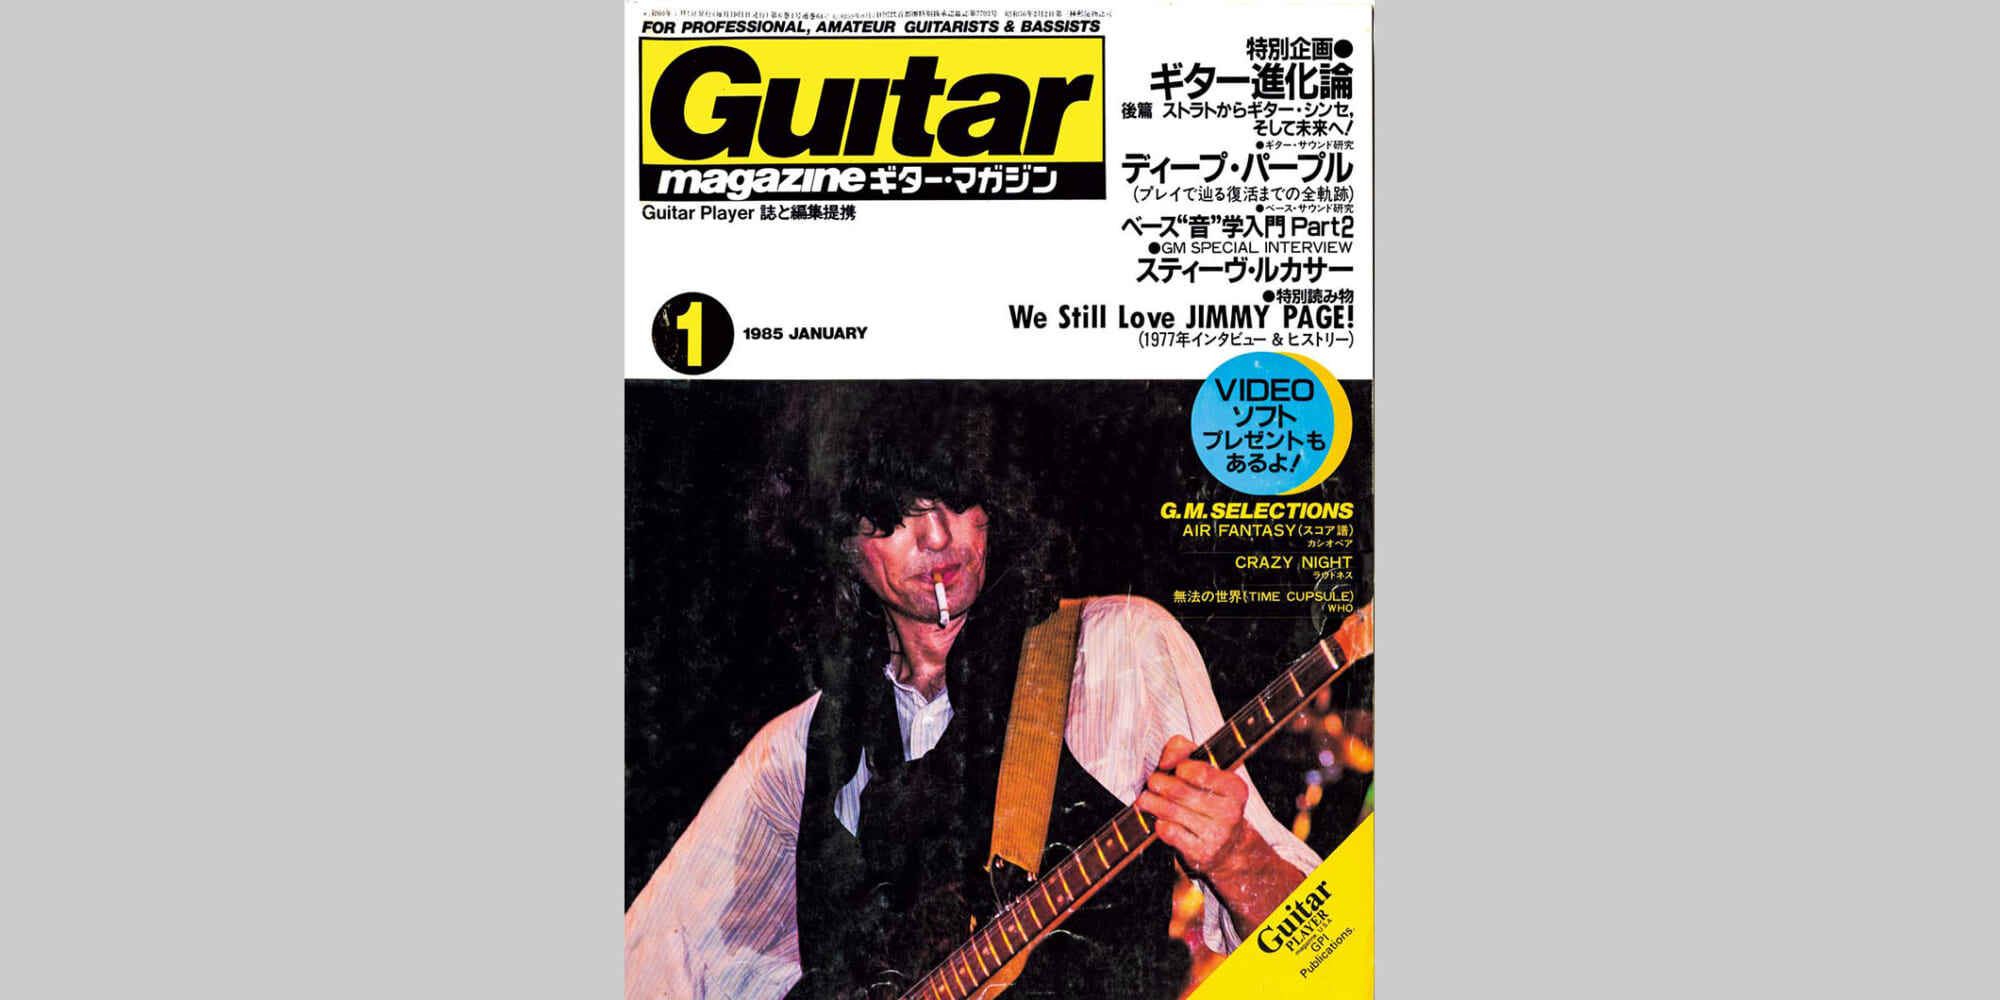 ギター・マガジン1985年1月号 表紙：ジミー・ペイジ | ギター 